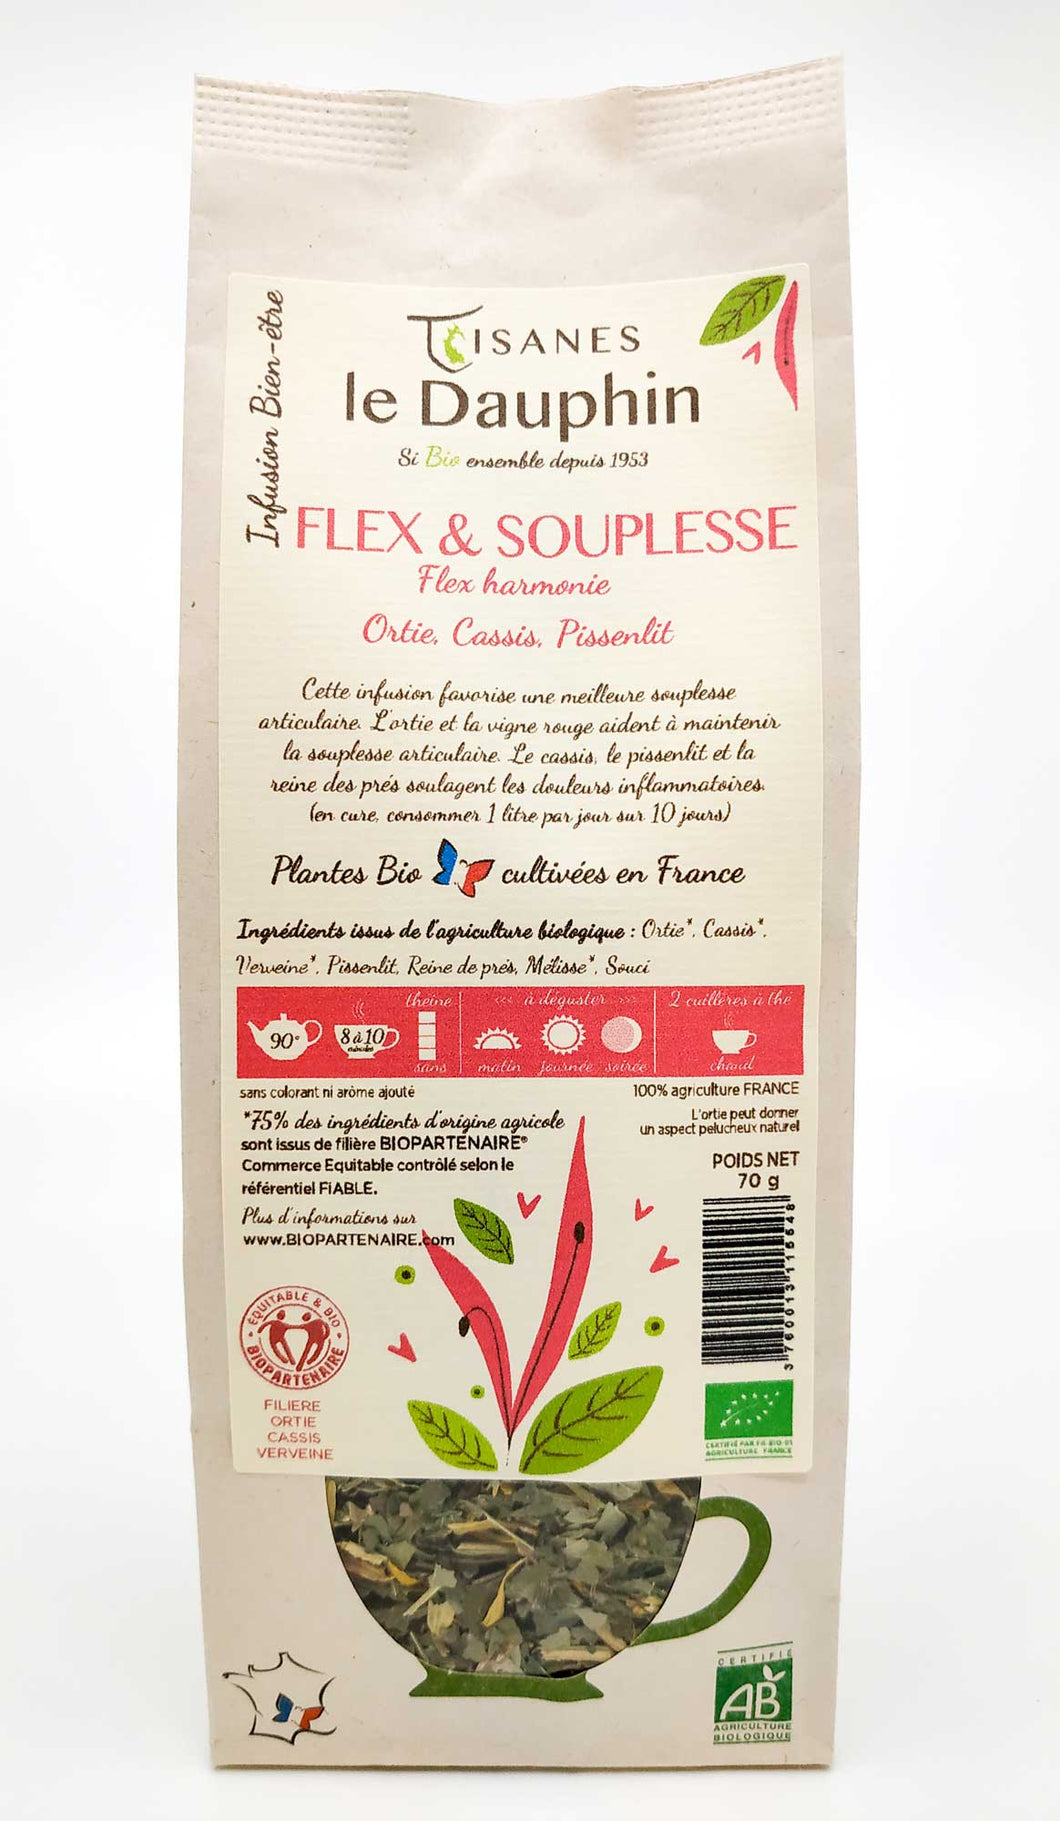 Flex & Souplesse Tisanes le Dauphin